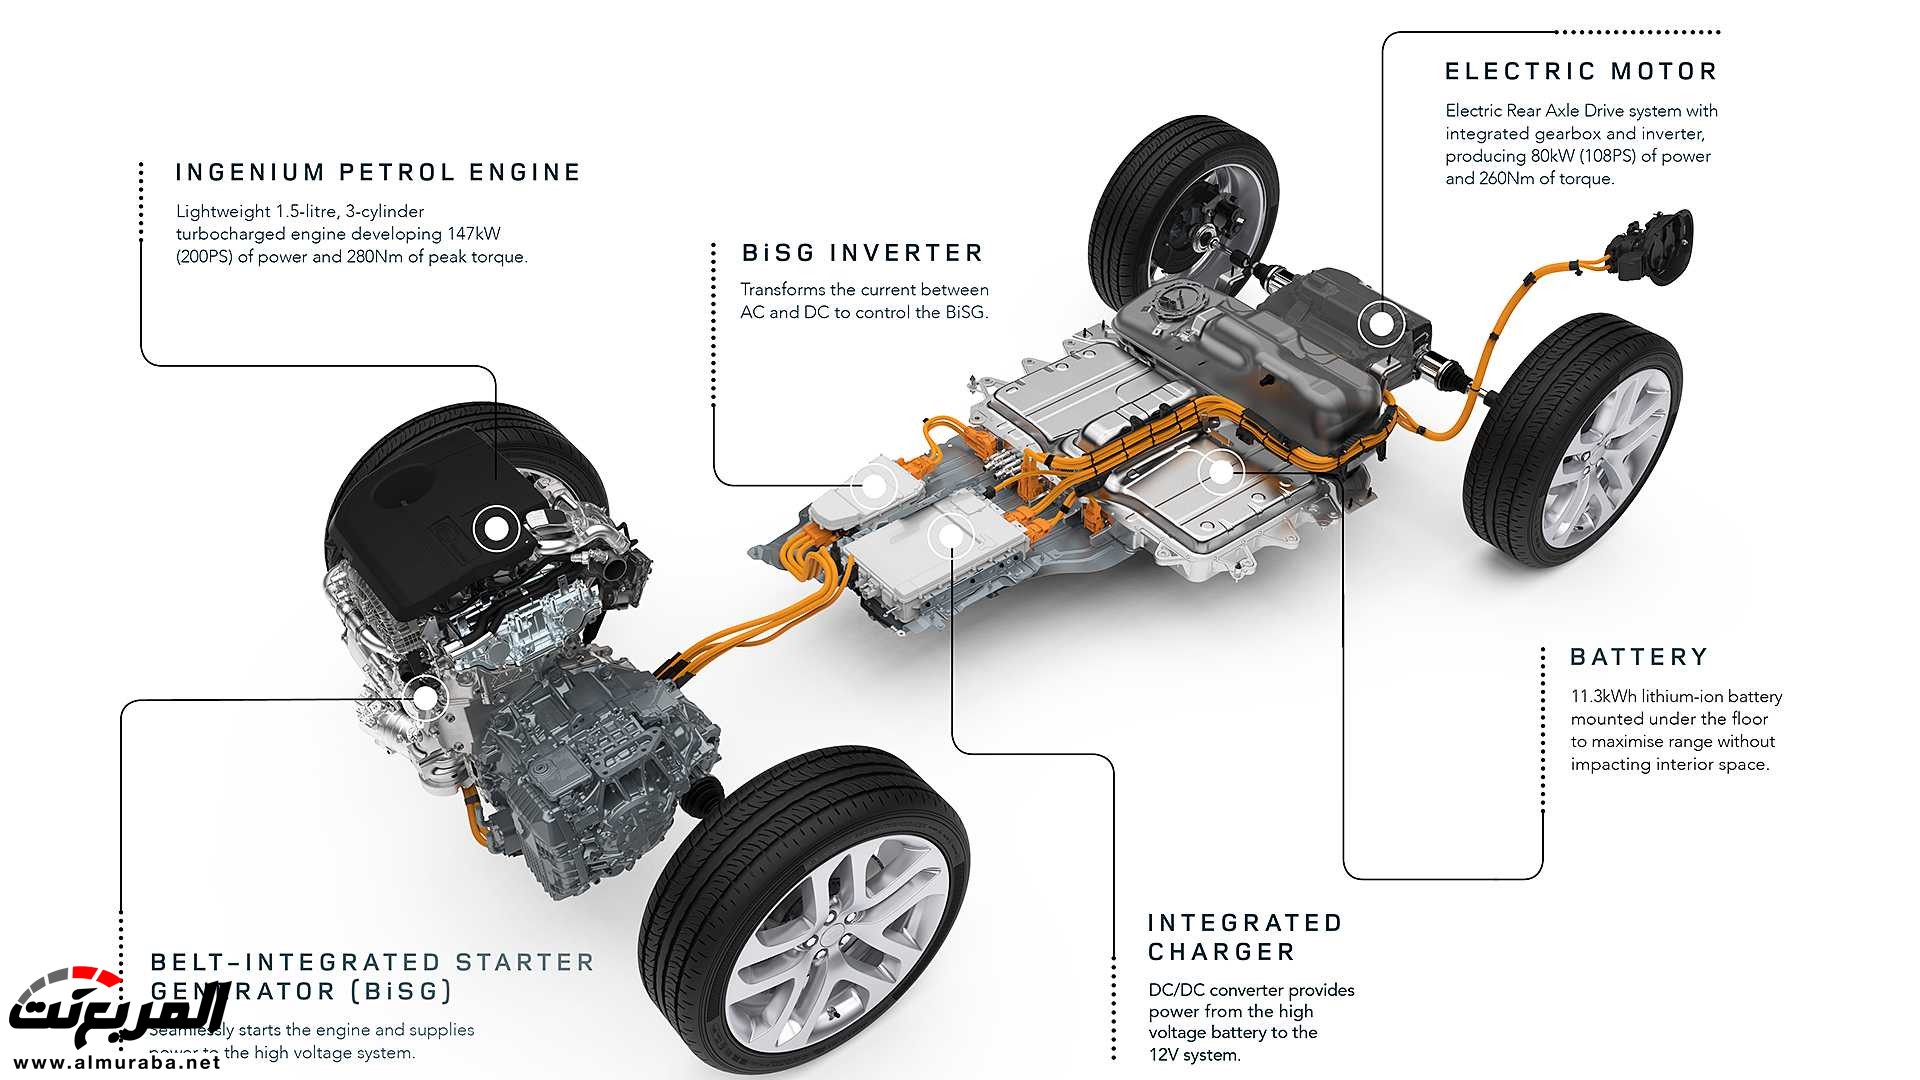 اهم 7 معلومات عن رنج روفر ايفوك 2020 الجديدة كلياً Range Rover Evoque 345